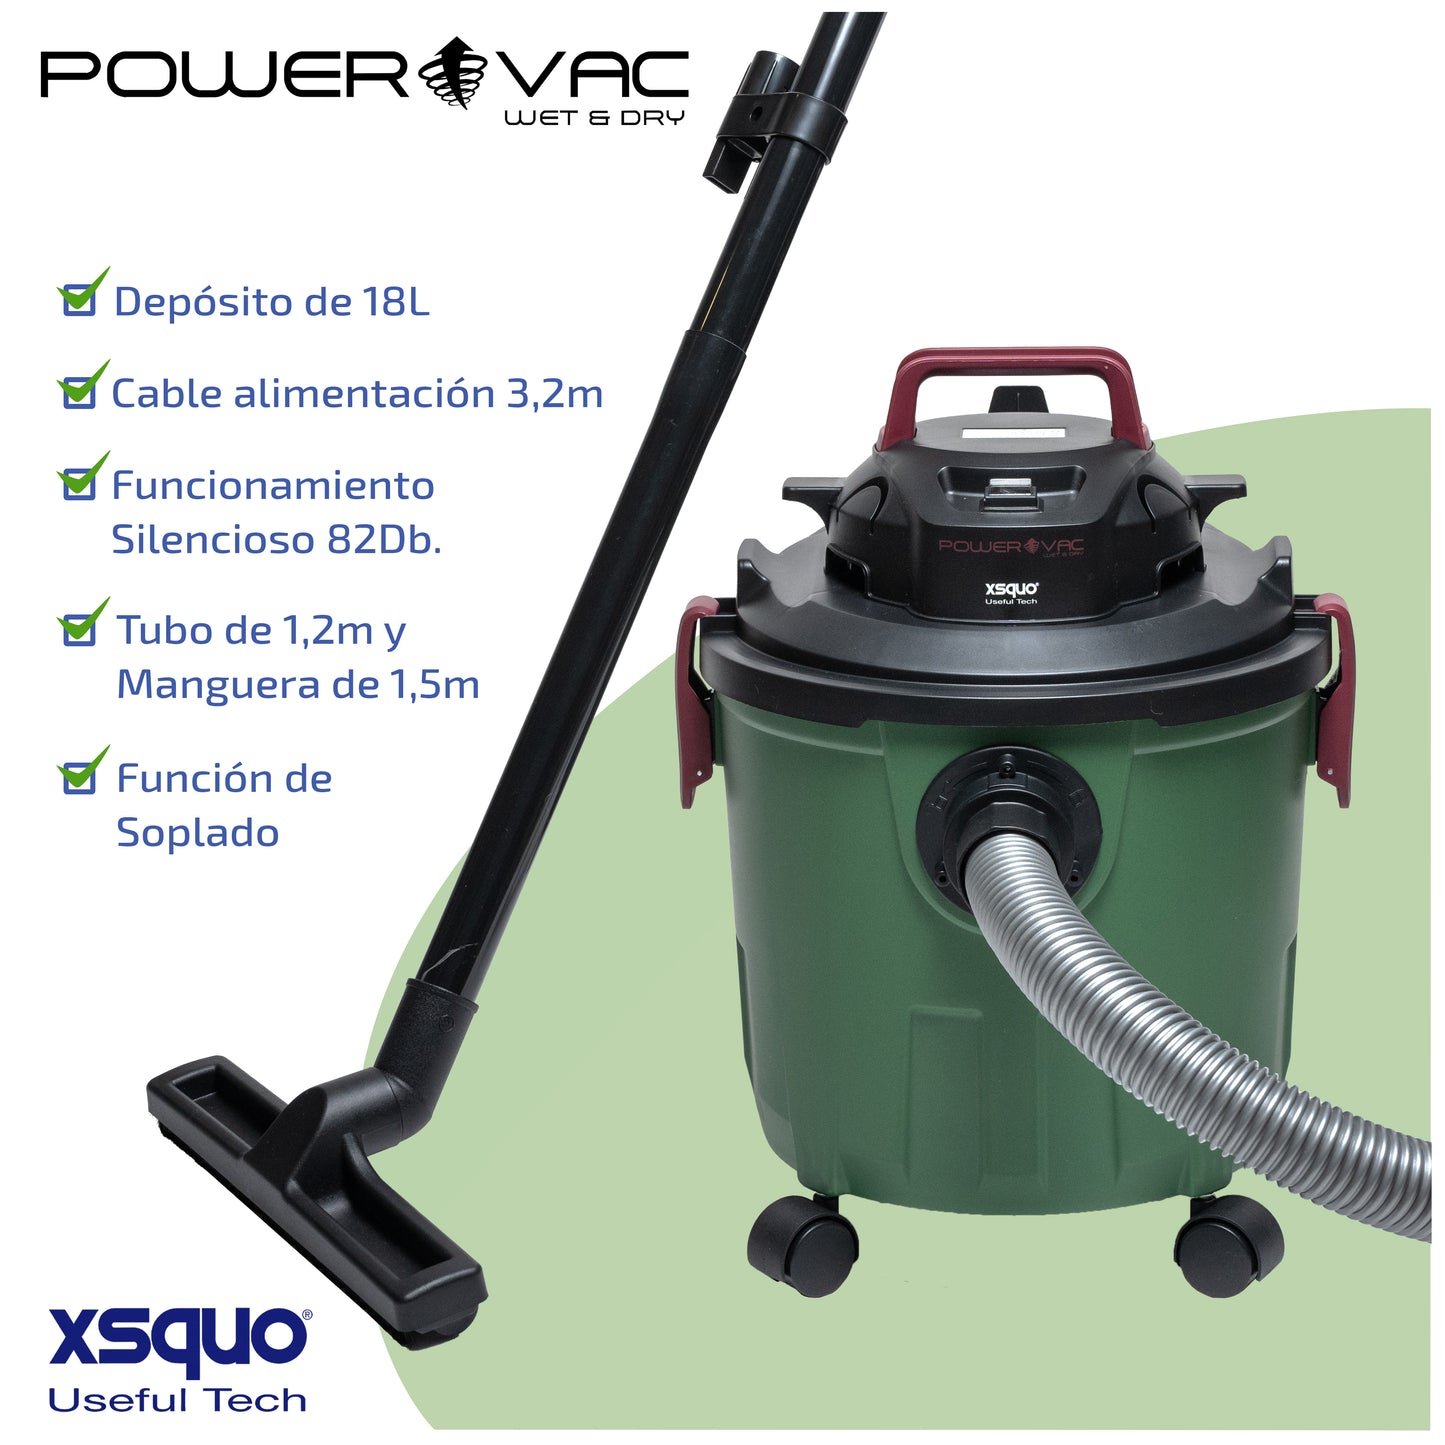 Power Vac Plus Aspiradora de sólidos y líquidos, Wet & Dry, con función soplado 1200w, aspiración 19kpa, soplado 16 m2/min, capacidad 1.8 Litros, carcasa anti impactos. Fácil desplazamiento.